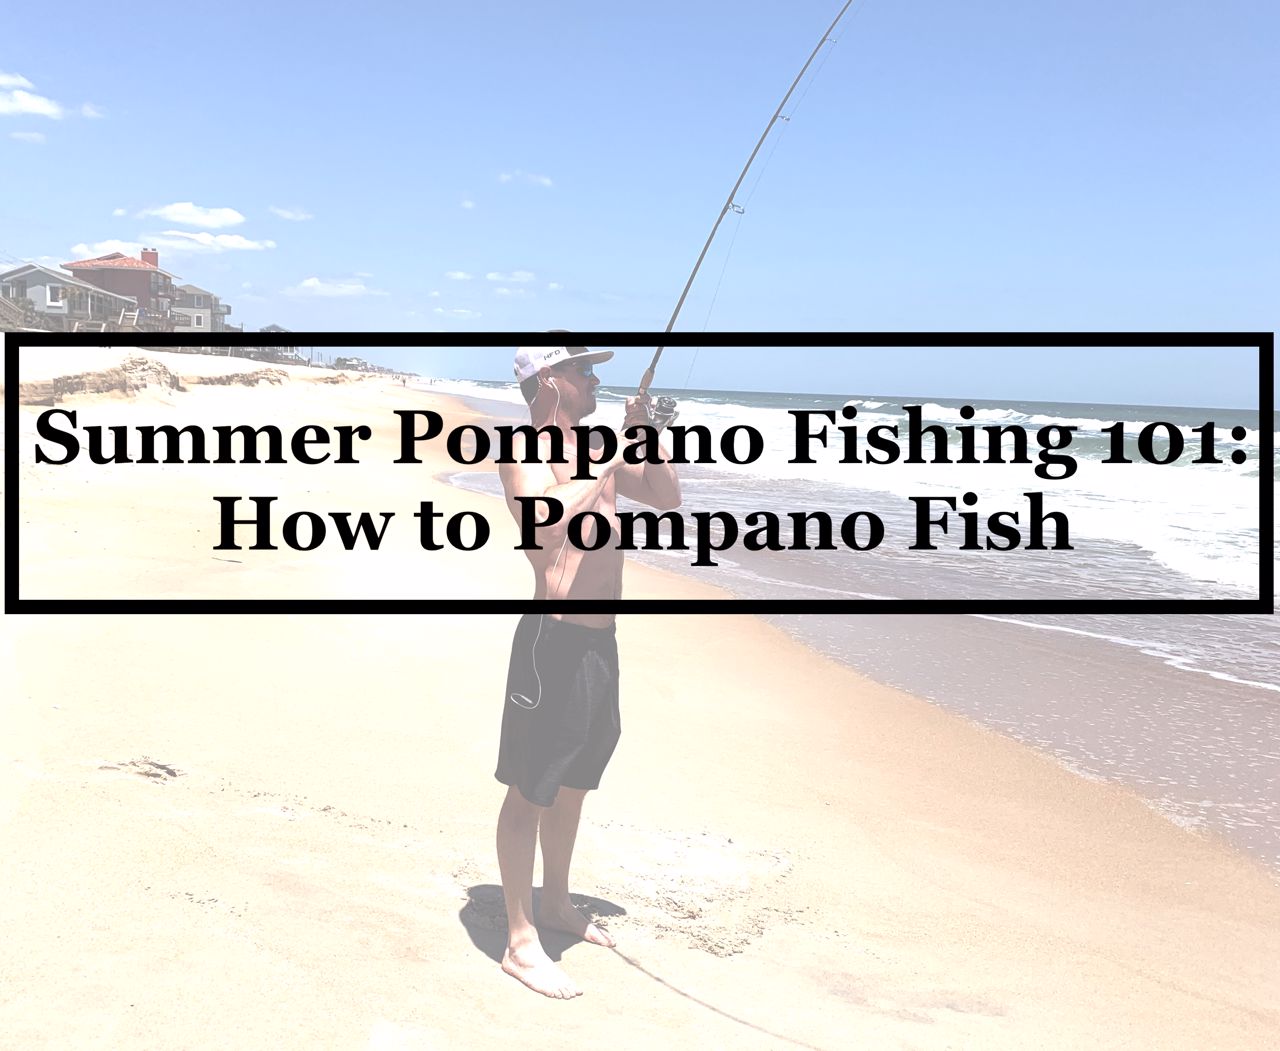 Summer Pompano Fishing 101 - How to Pompano Fish